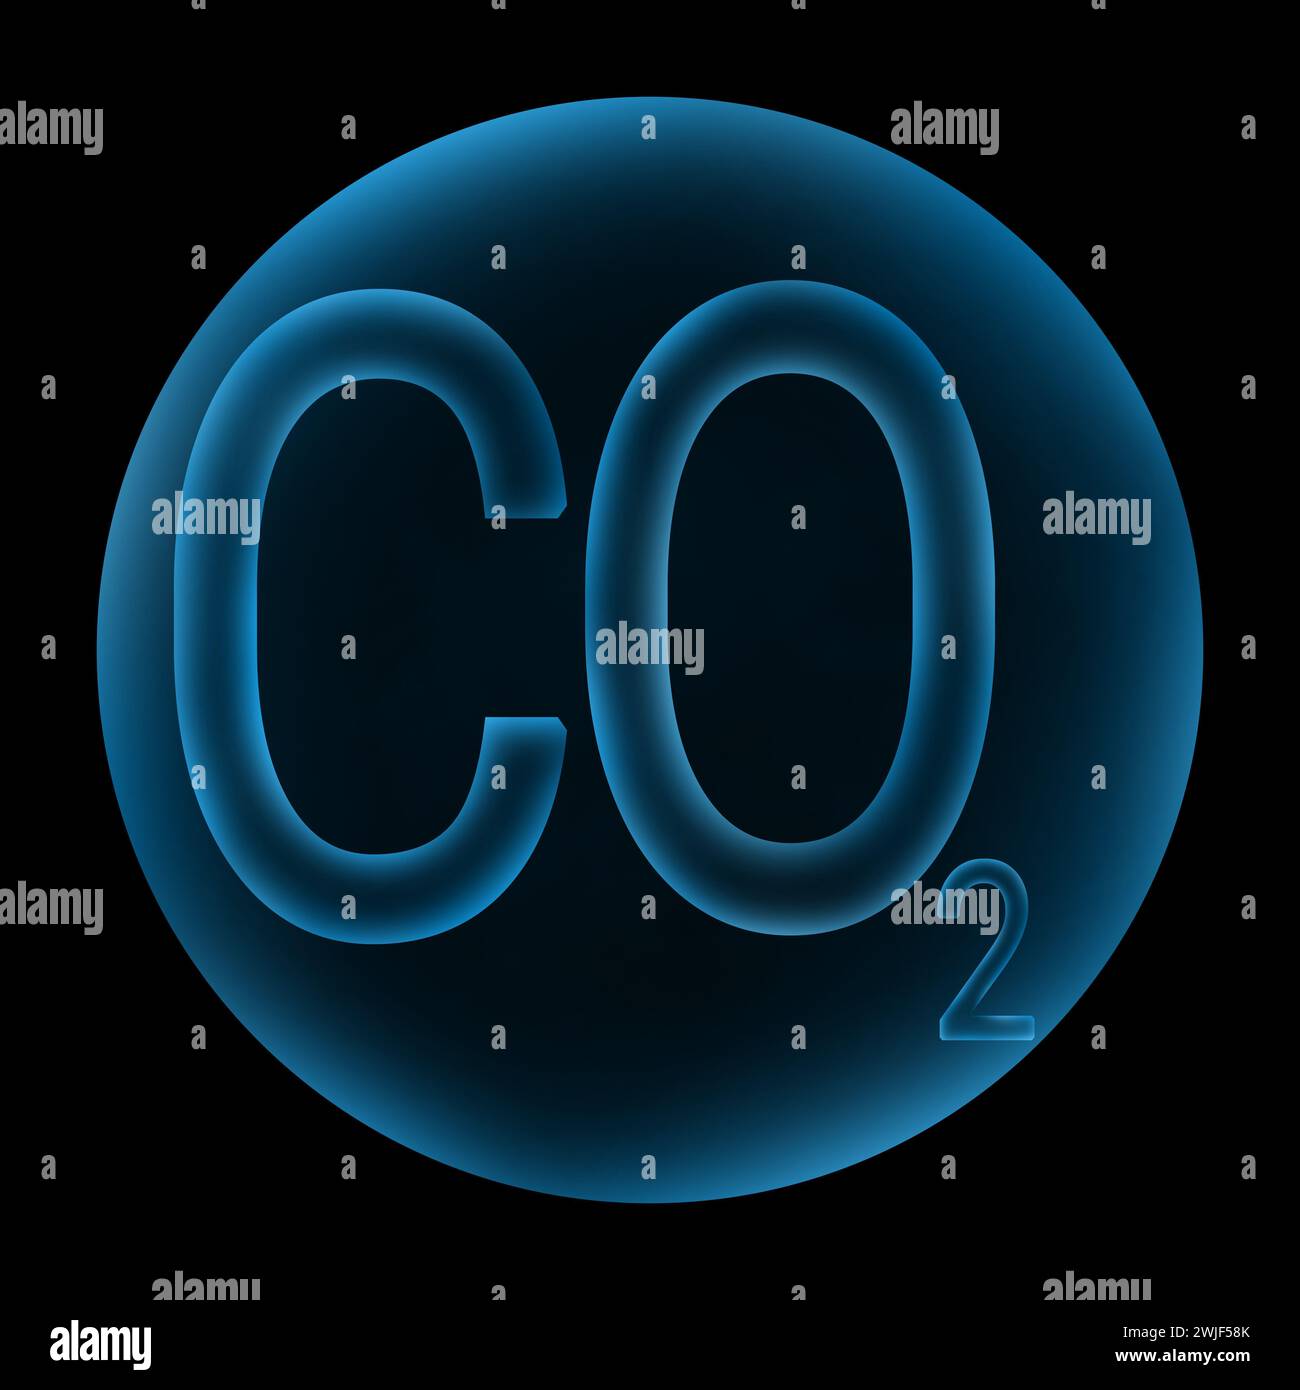 biossido di carbonio co2 con design a bolle d'aria Foto Stock